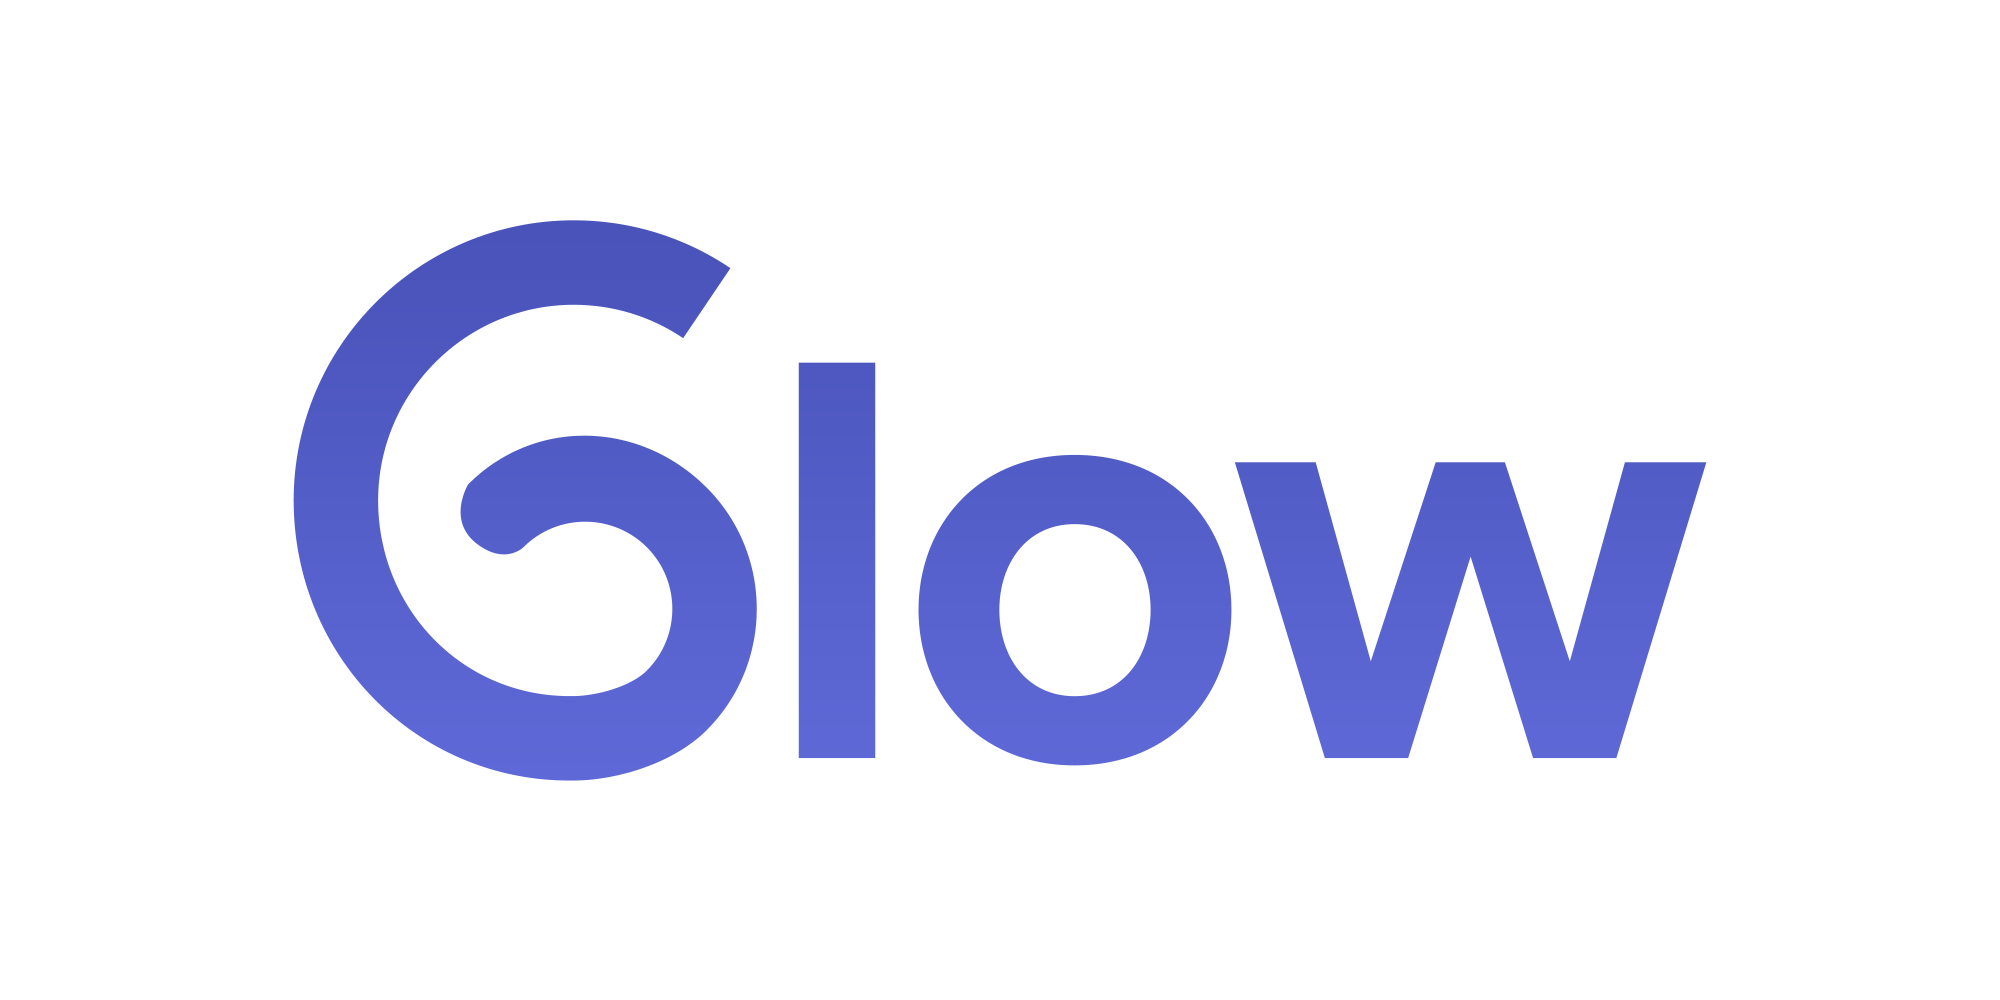 glow-logo